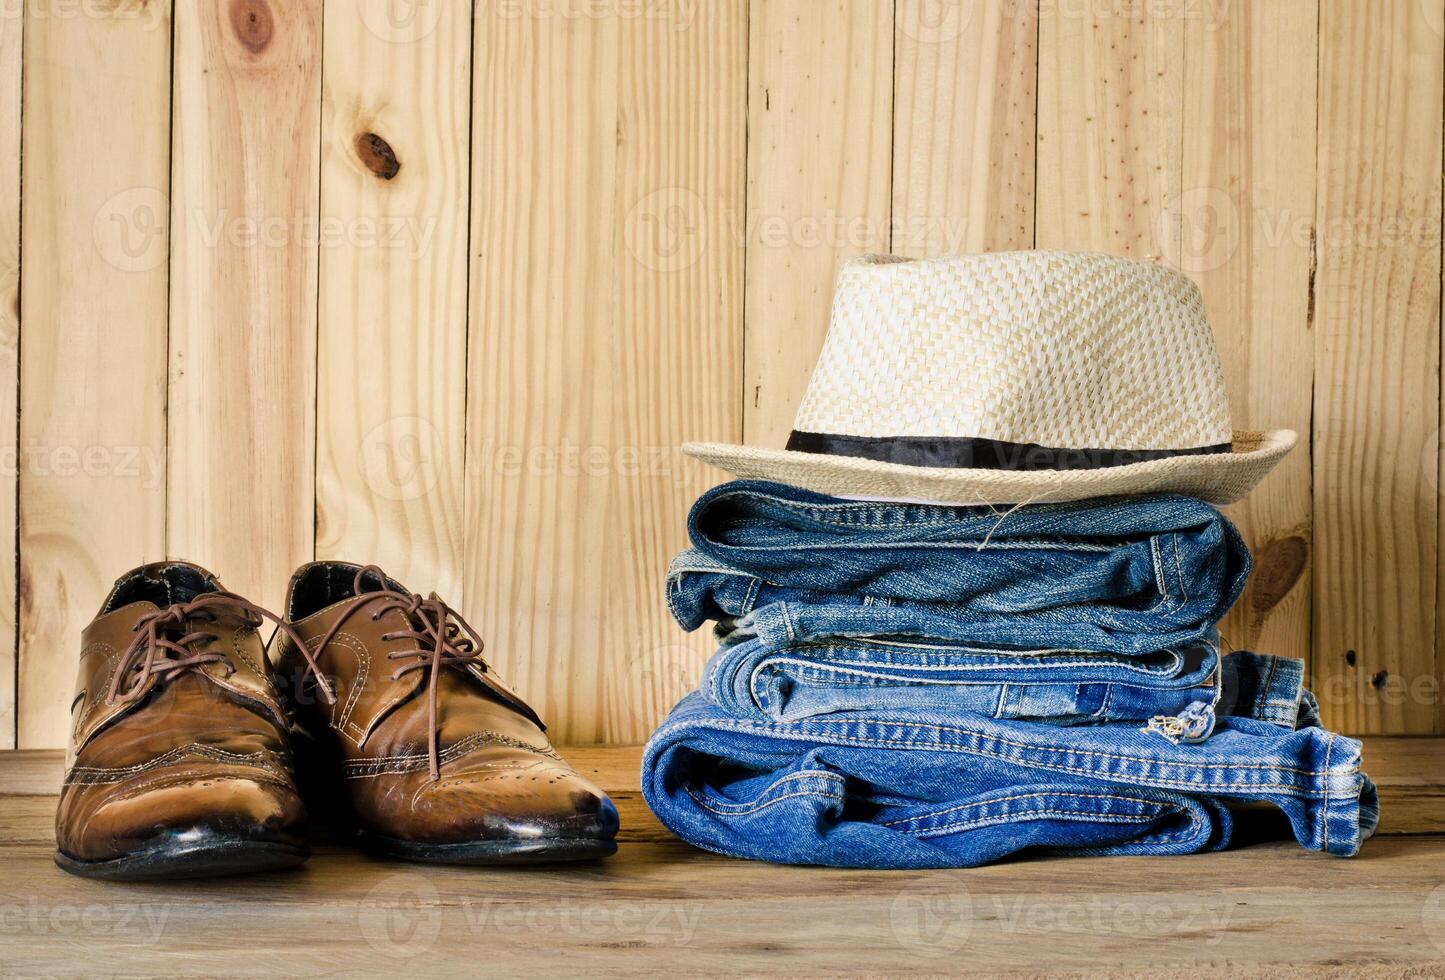 viajes, accesorios, vaqueros, sombreros, zapatos, Listo para el viaje en de madera backgrond foto